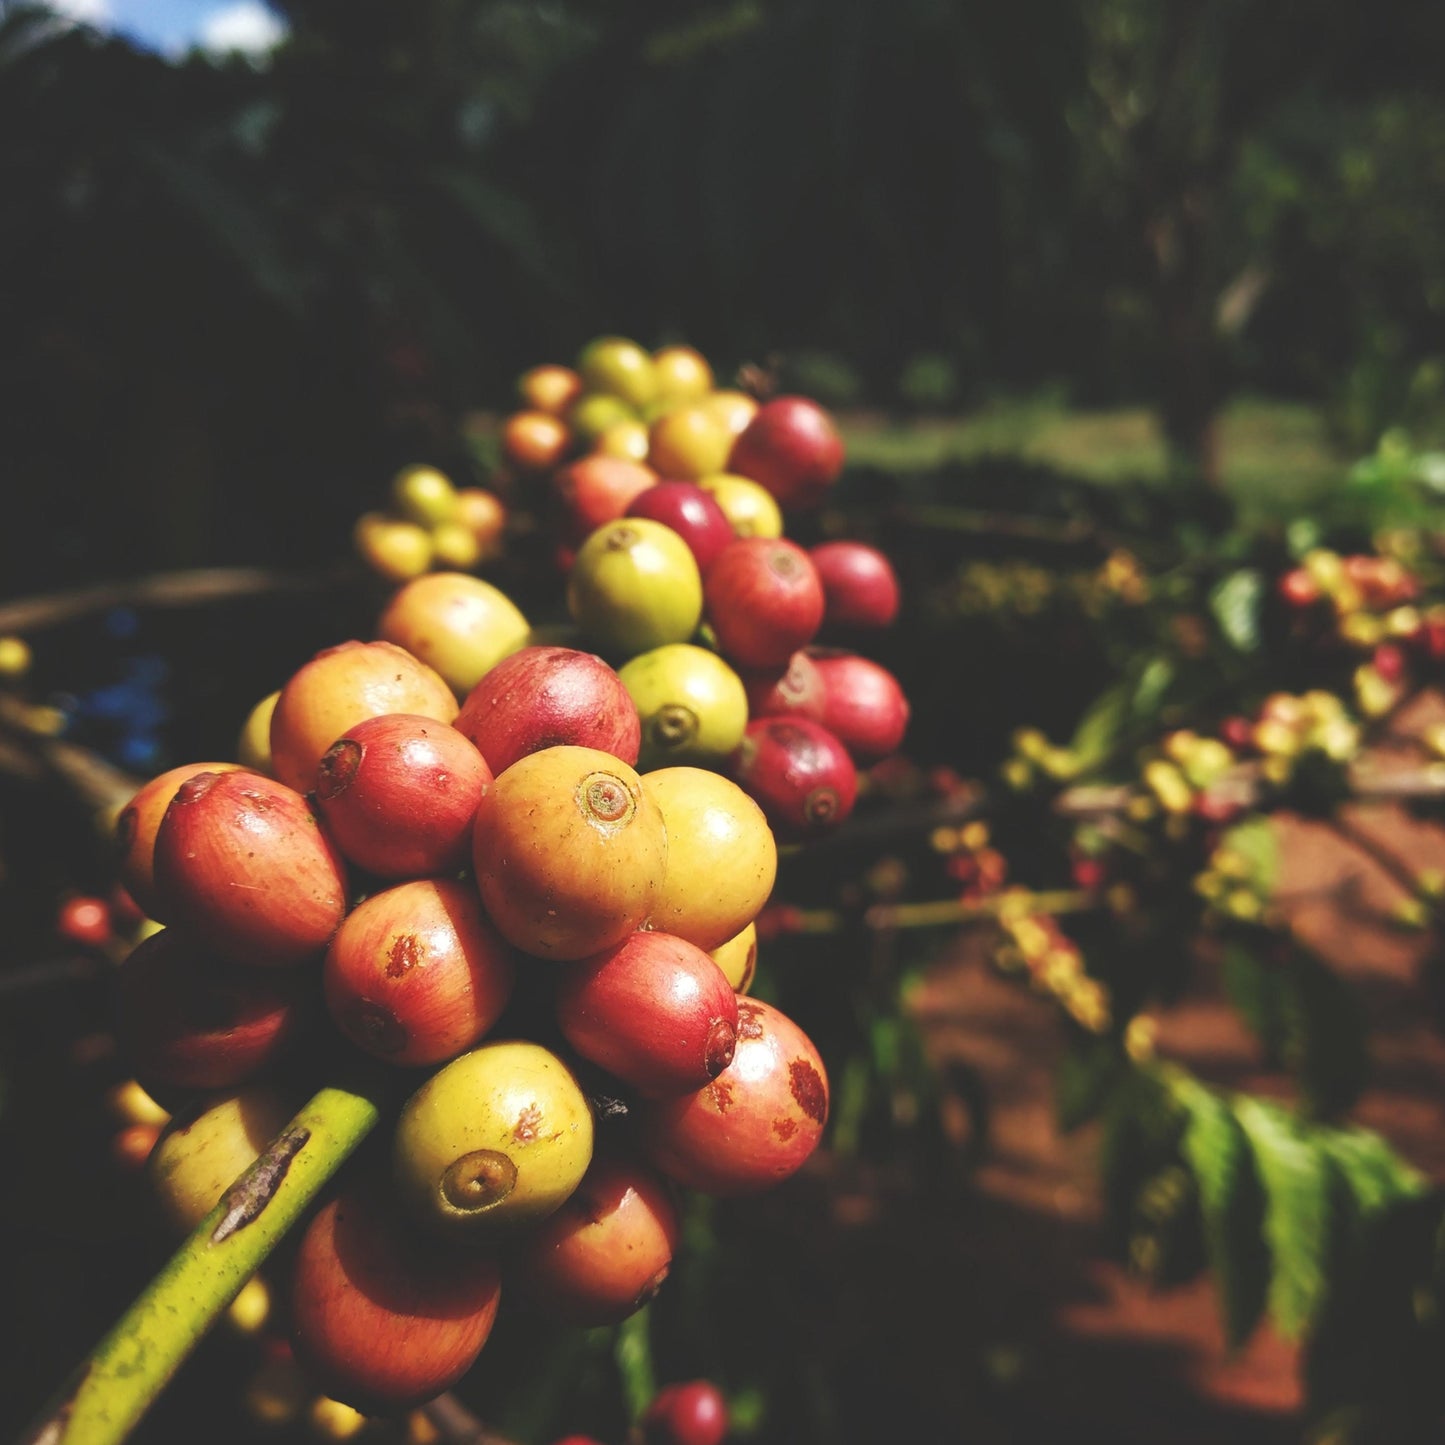 India Pergament Robusta - Rå, grønne kaffebønner